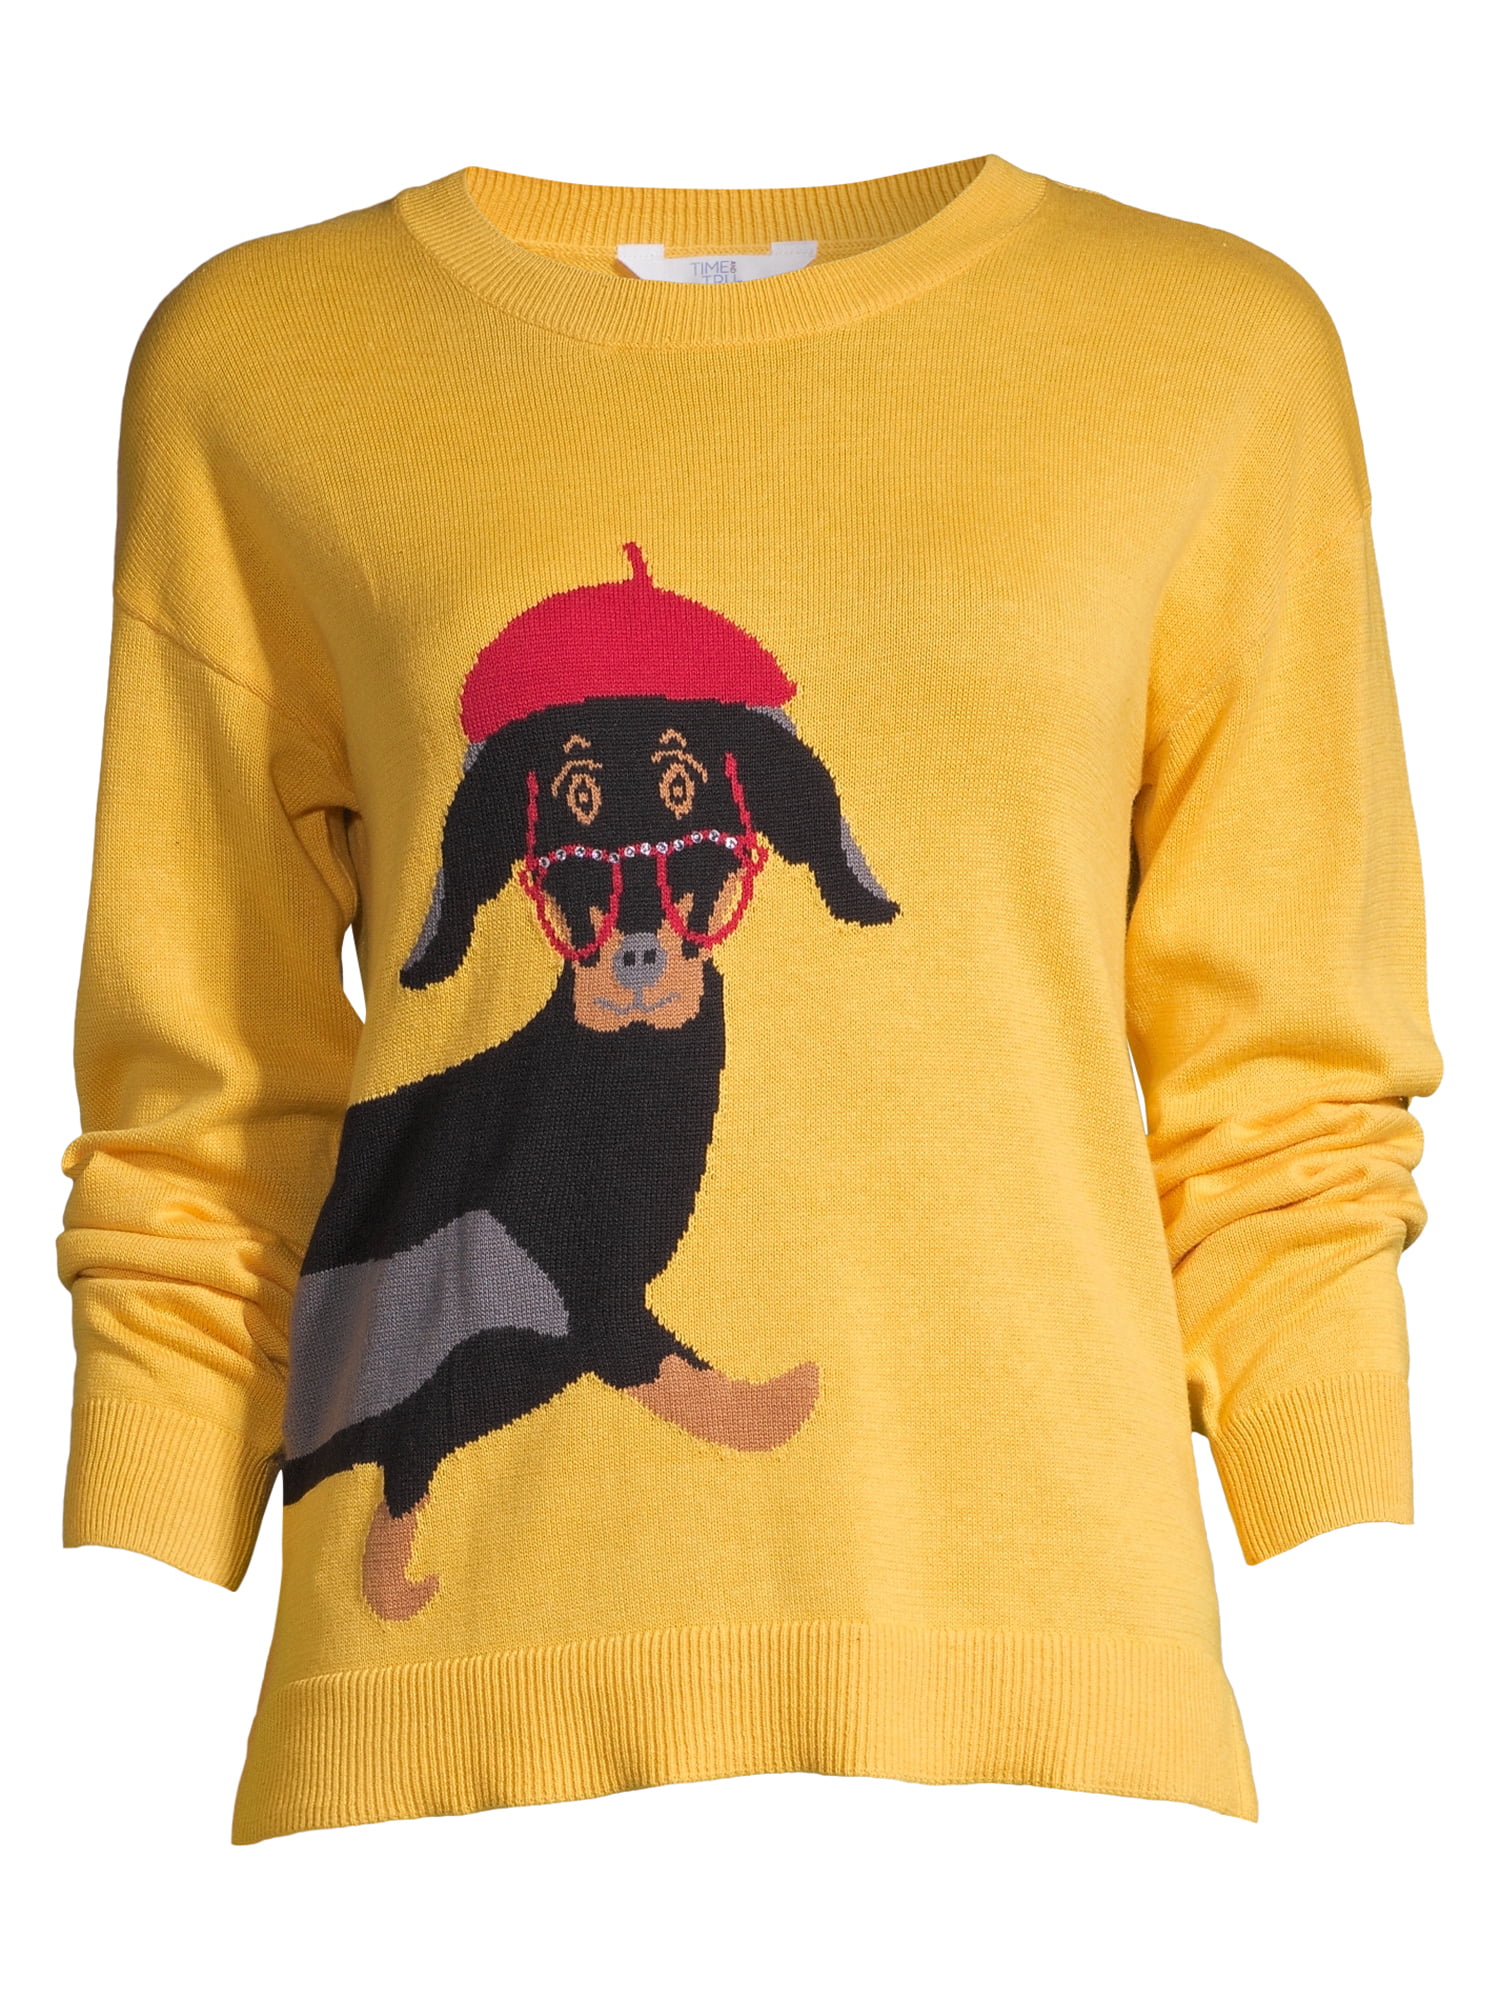 women's dachshund sweater